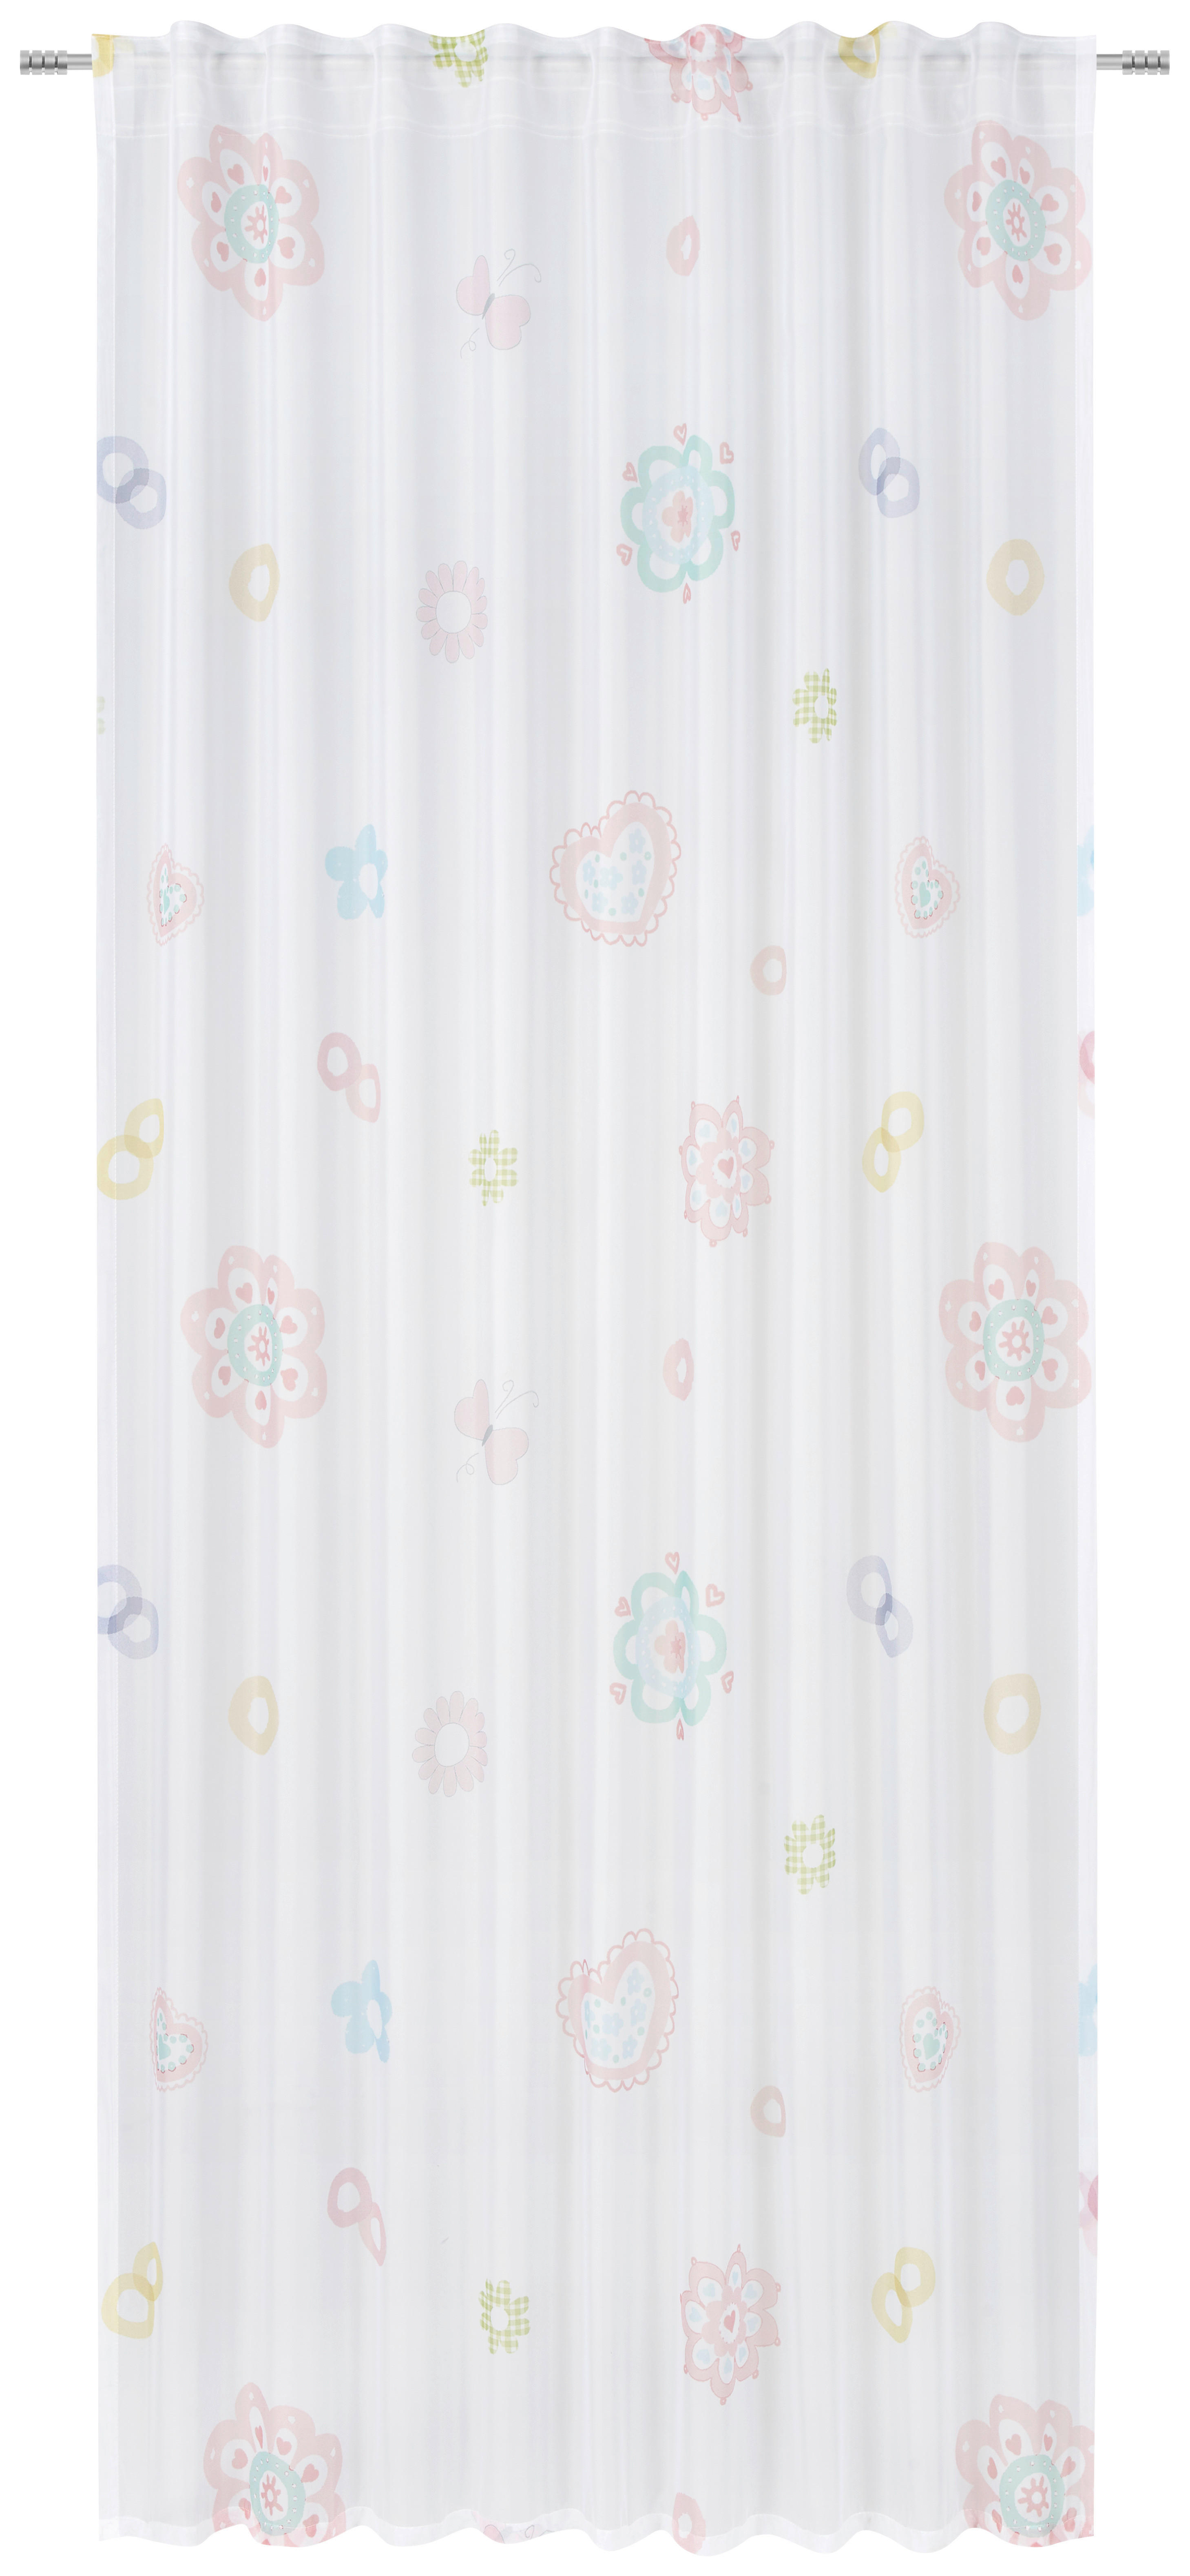 KINDERVORHANG transparent  140/245 cm  - Multicolor, Basics, Textil (140/245cm) - Ben'n'jen